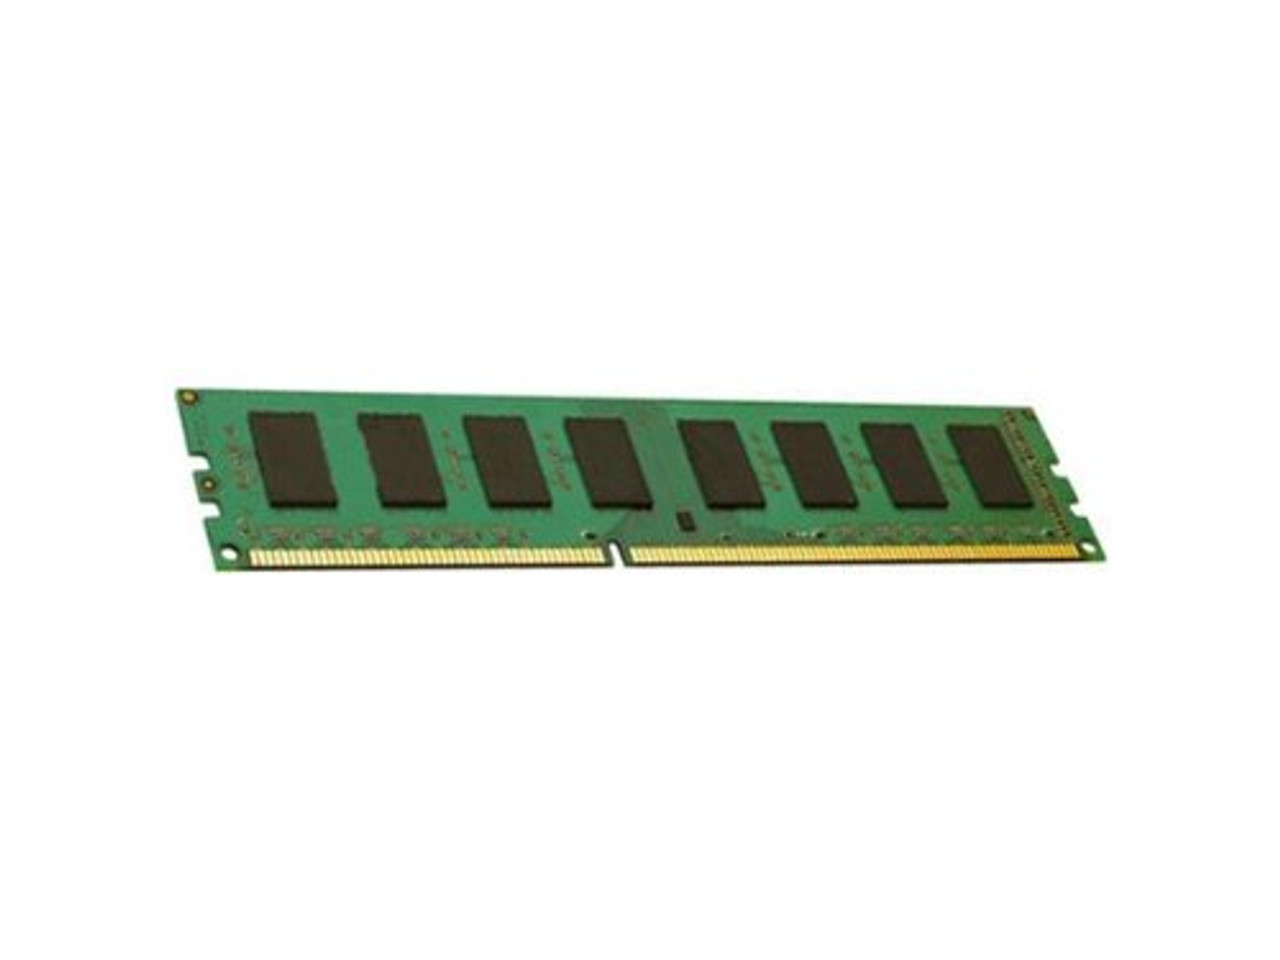 ENET 16GB DDR4 SDRAM Memory Module - P00920-B21-ENC